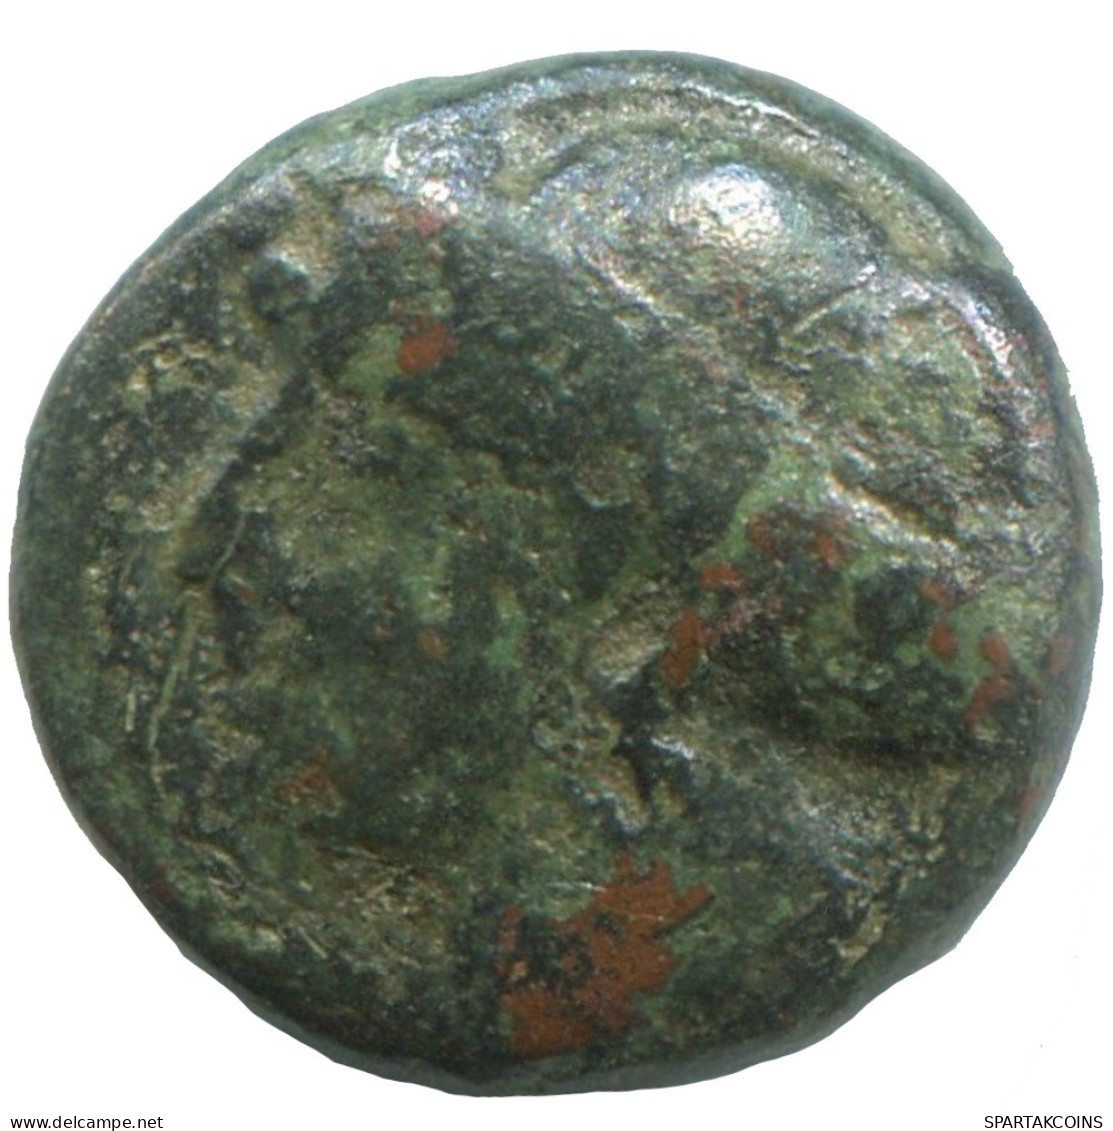 Ancient Antike Authentische Original GRIECHISCHE Münze 1.9g/12mm #SAV1287.11.D.A - Greek